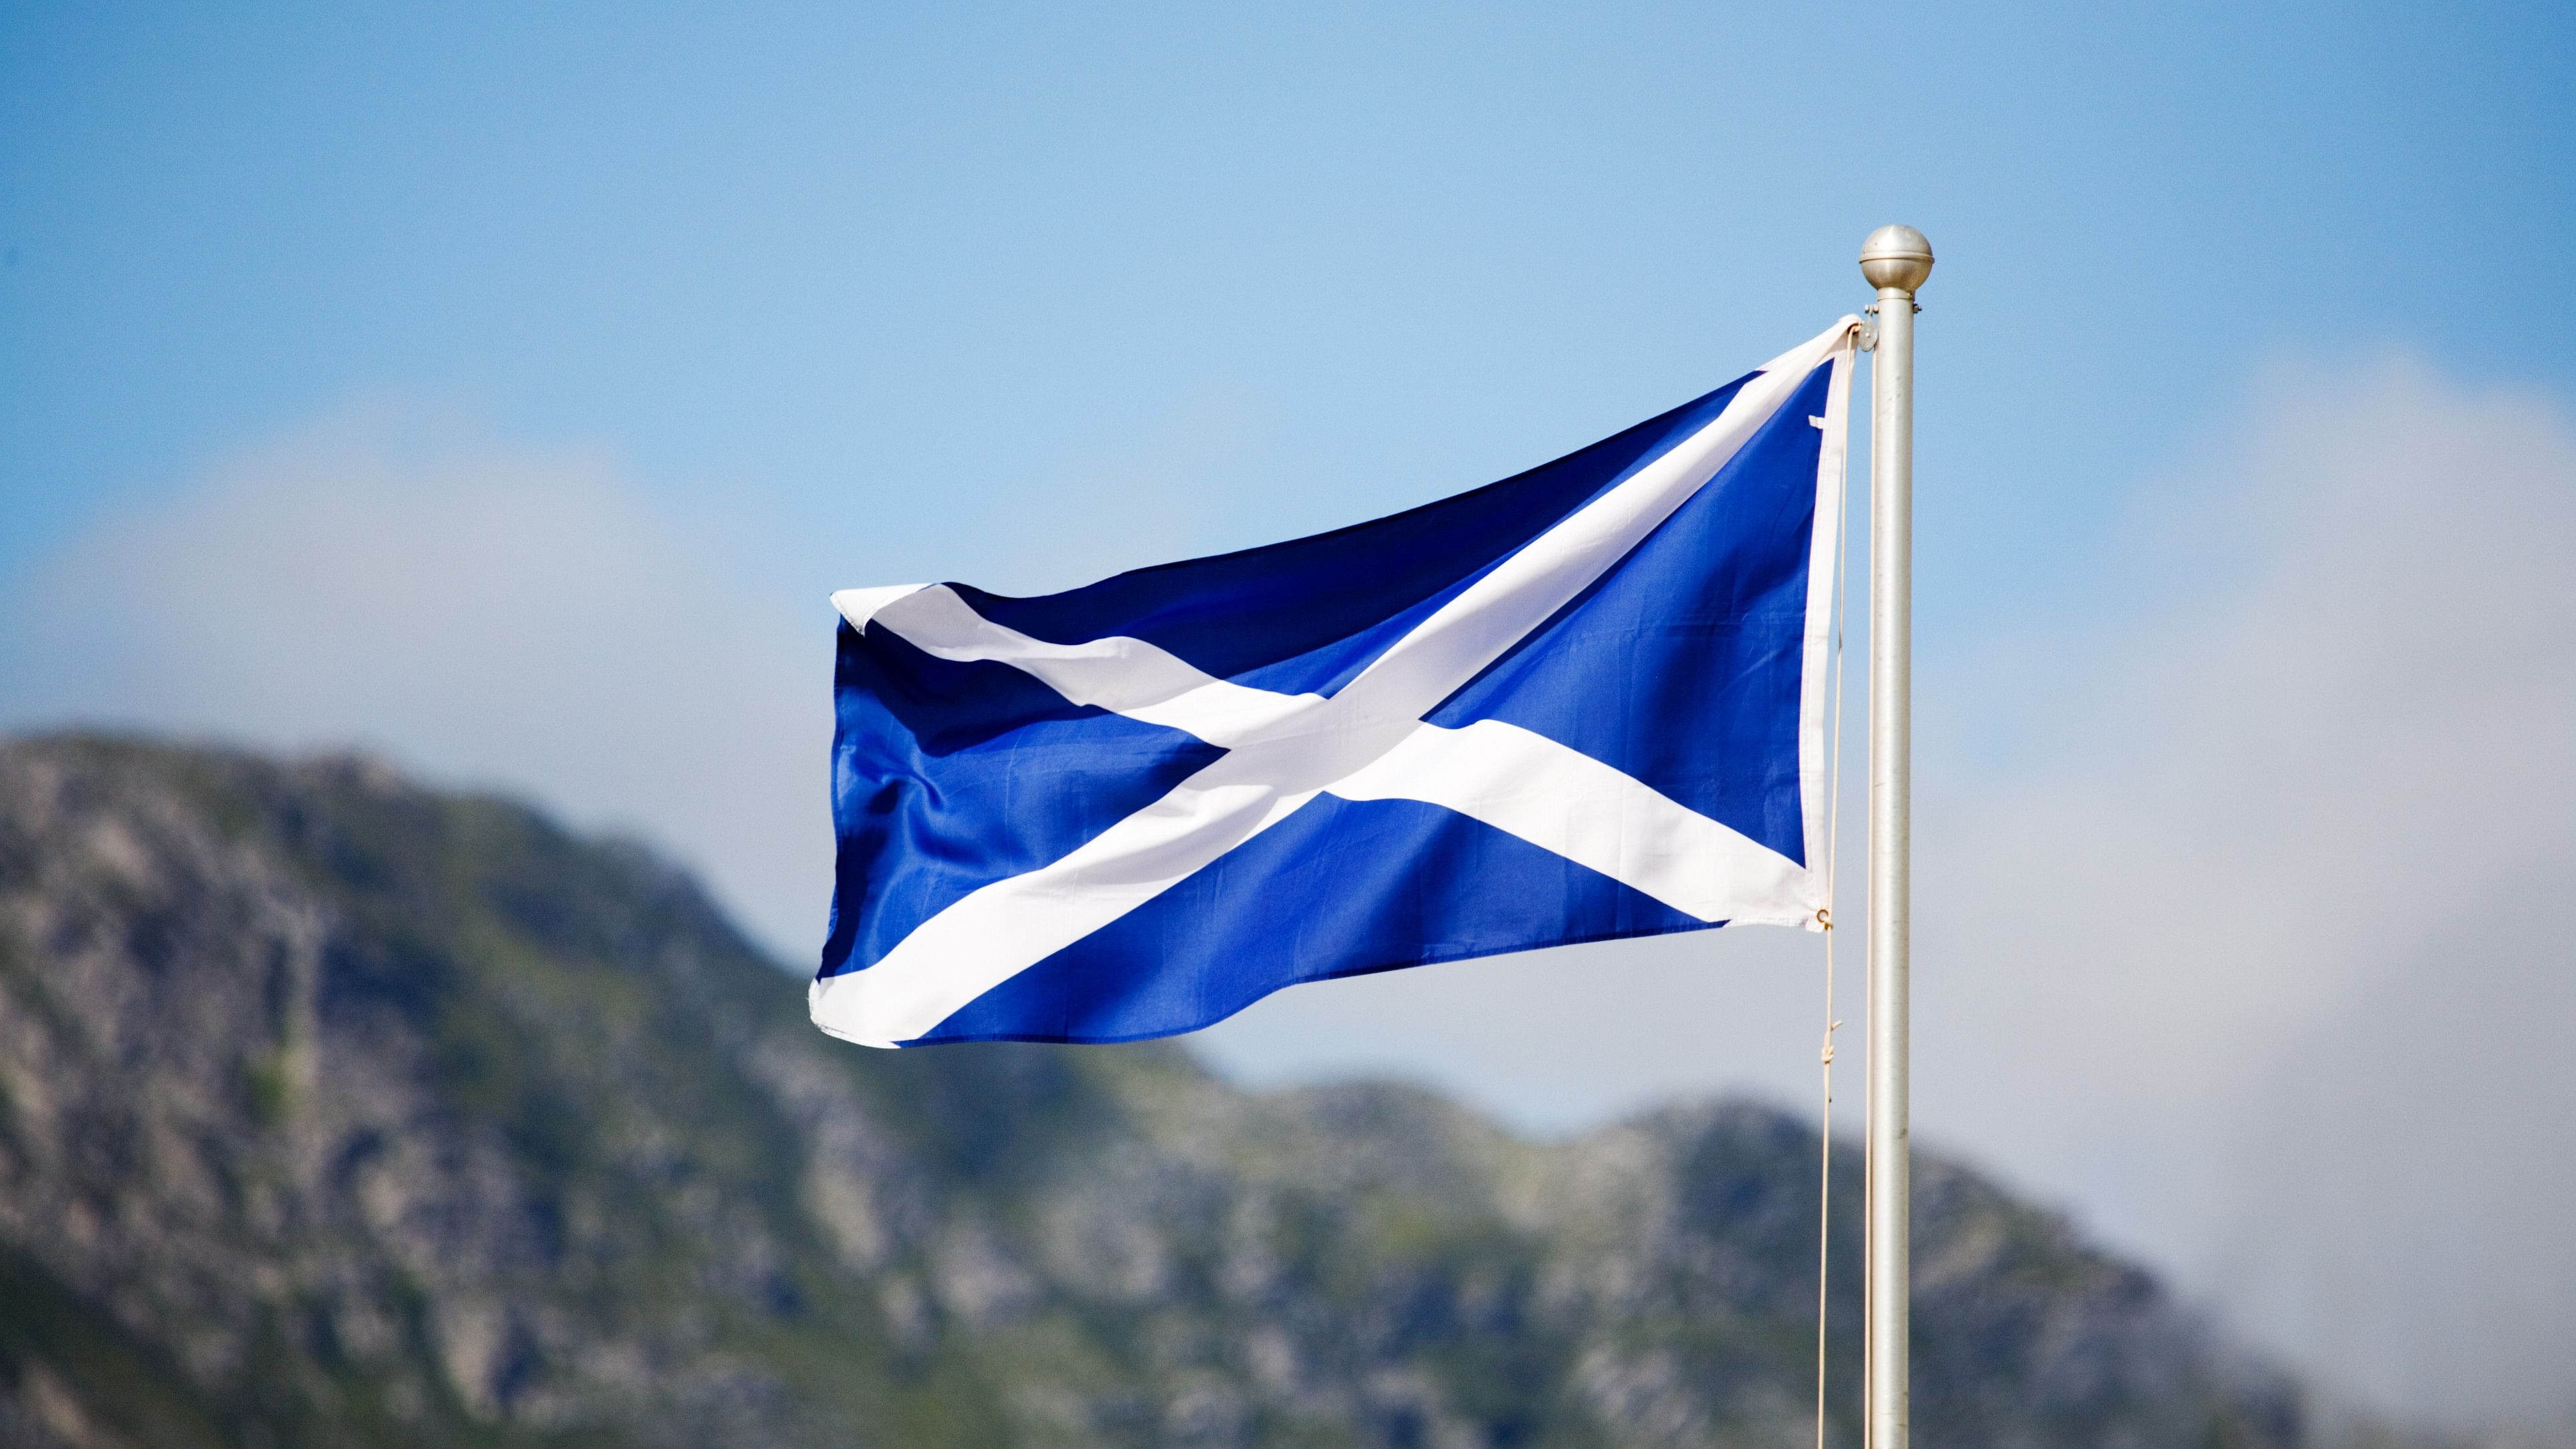 <div class="paragraphs"><p>Representative image showing national flag of Scotland.</p></div>